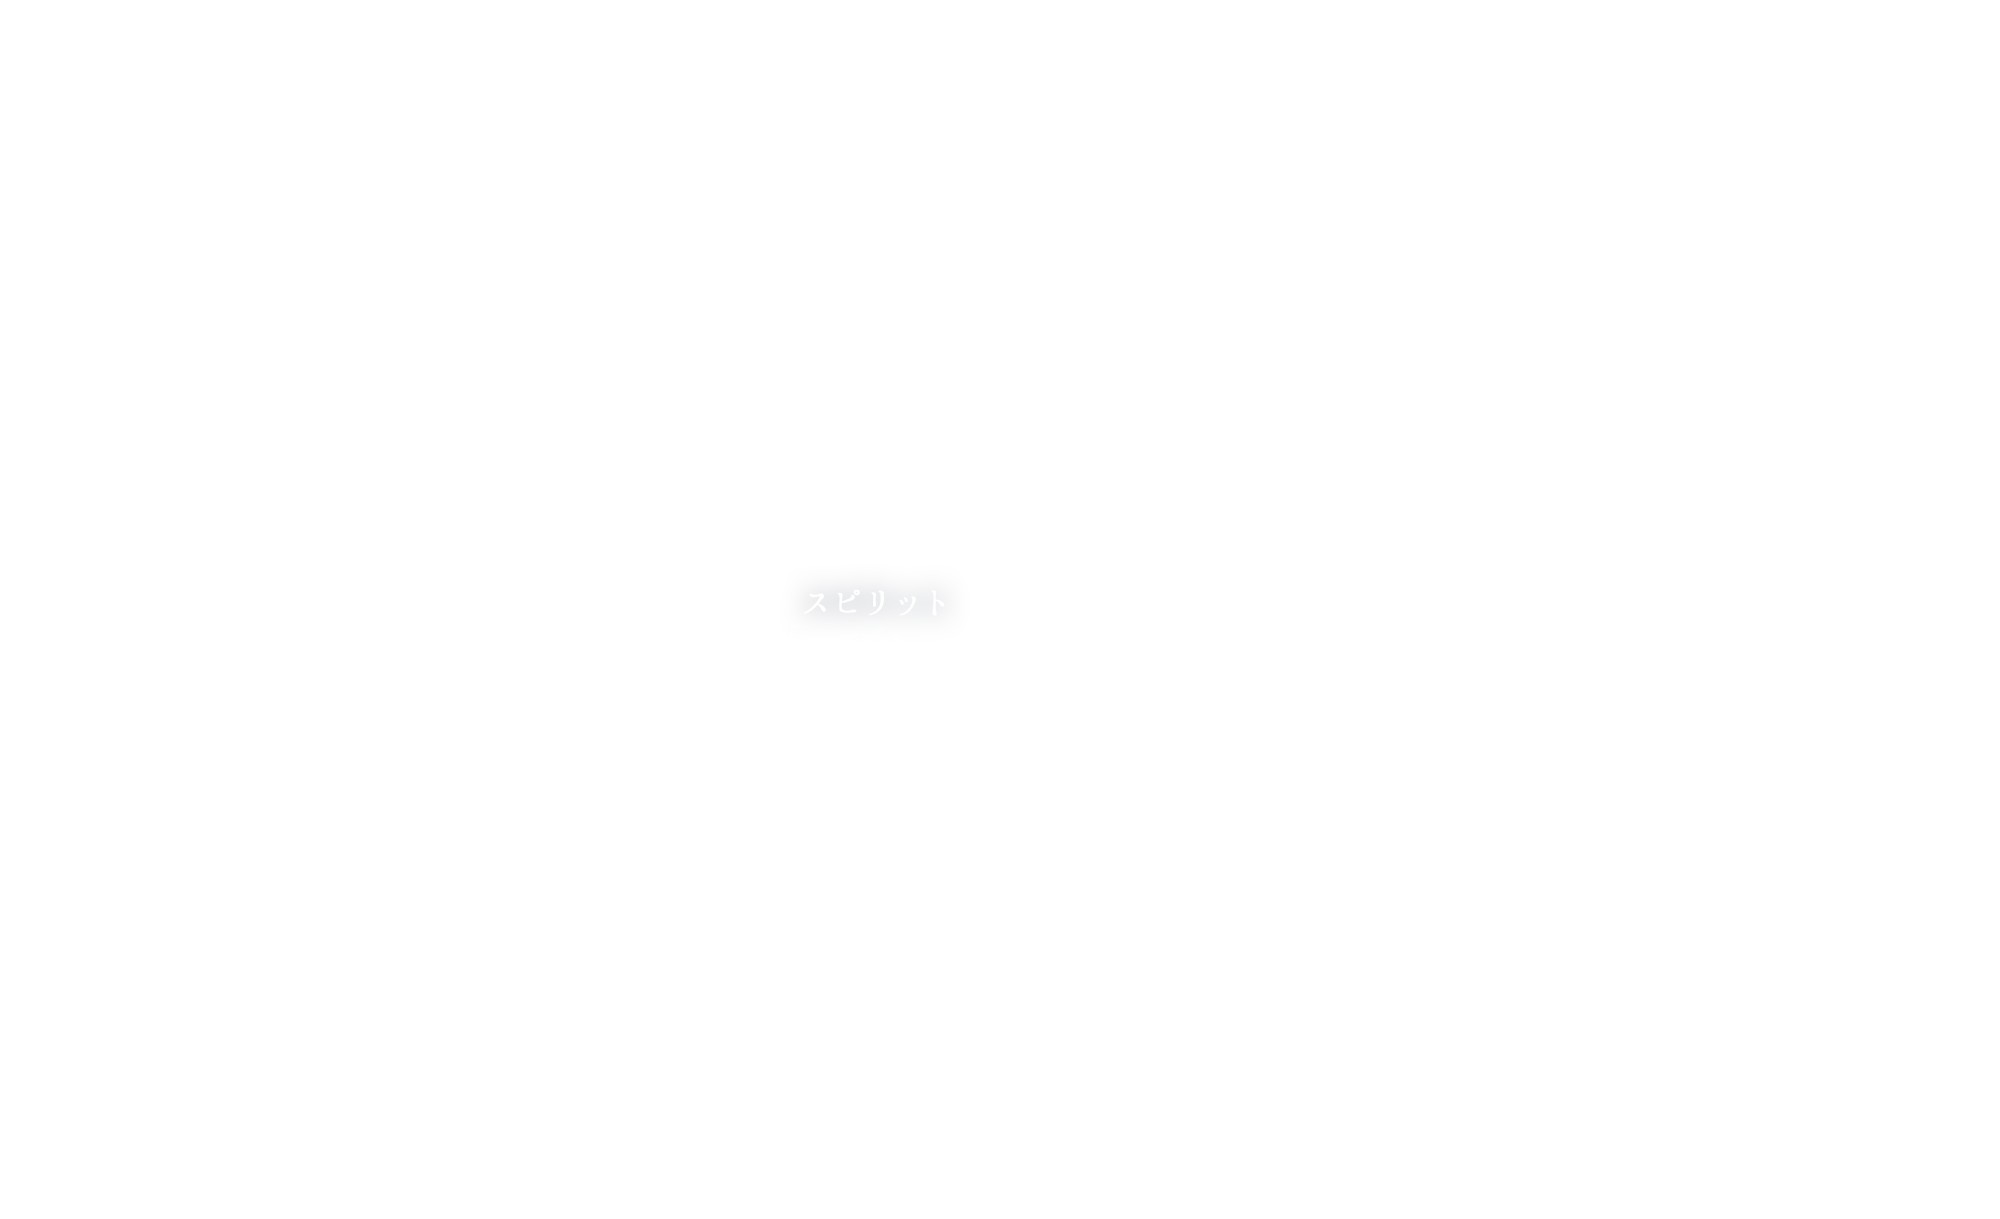 ALOHAには、承け継がれてきたハワイの「魂」が生きている。